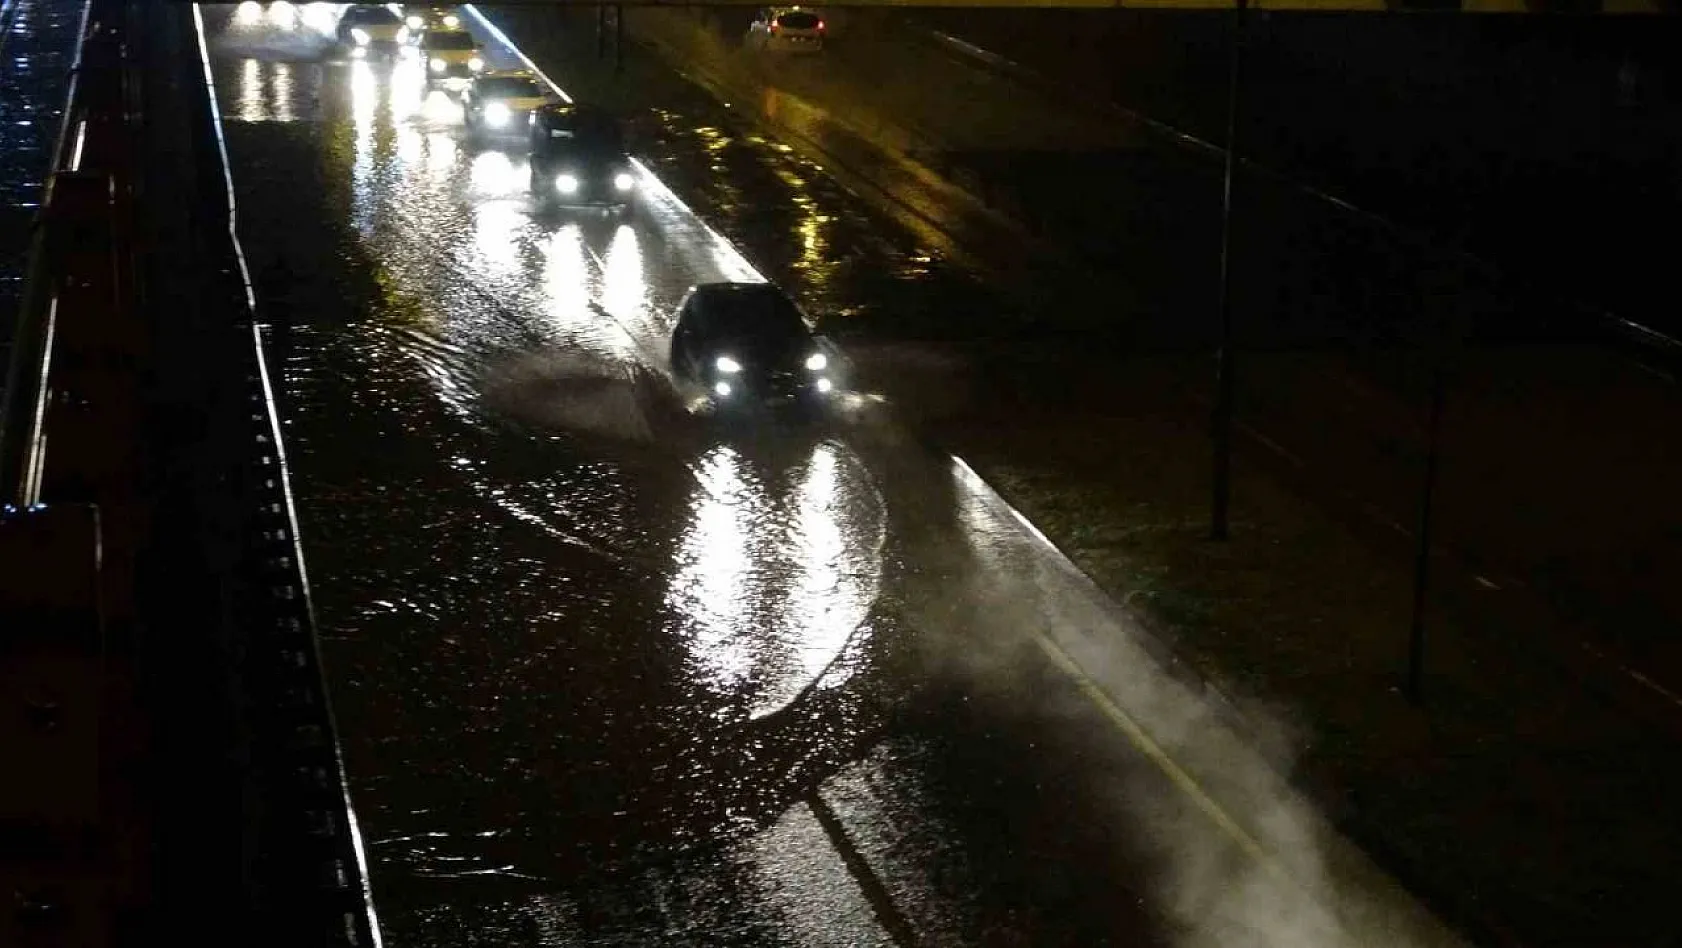 Malatya'da sağanak yağış etkili oldu